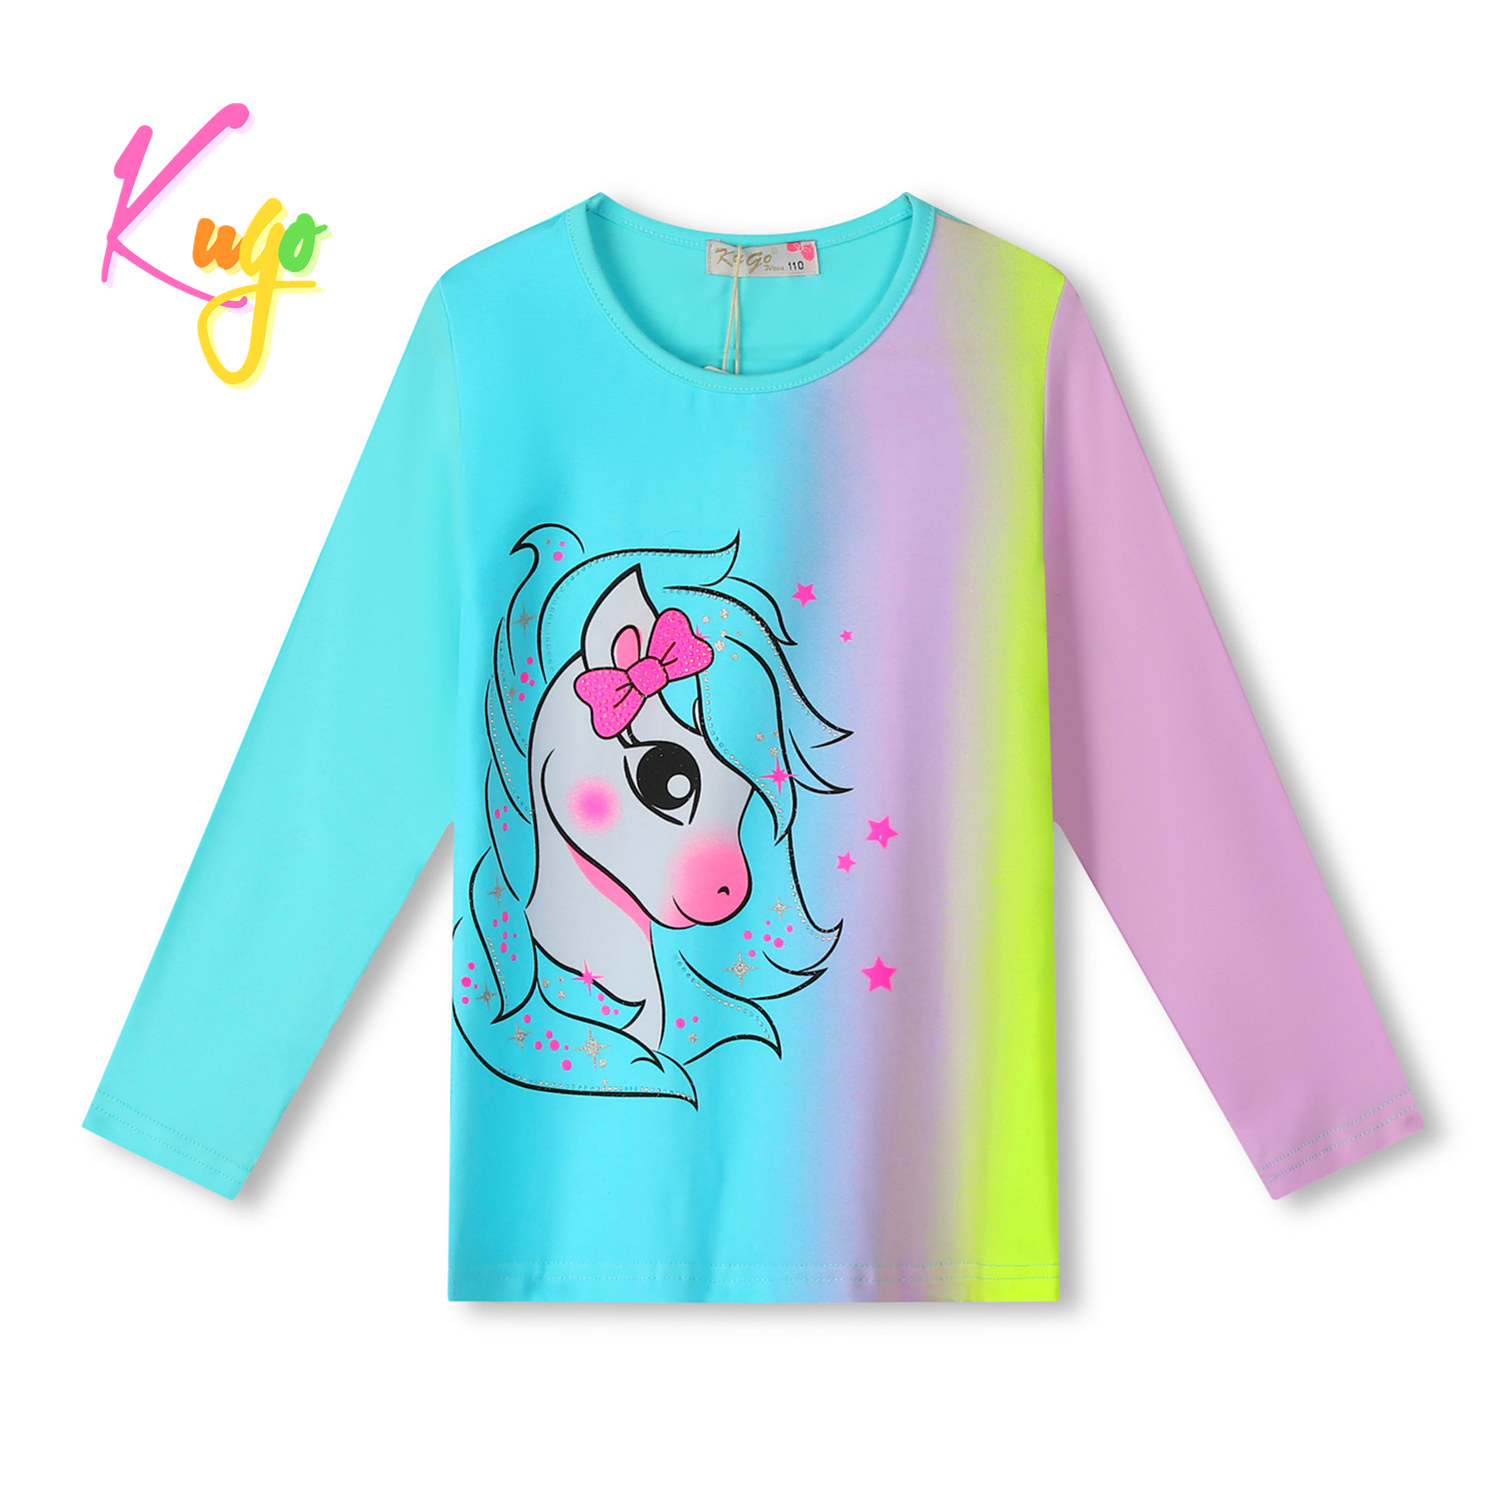 Dívčí tričko - KUGO PC3813, tyrkysová/fialková/signální Barva: Tyrkysová, Velikost: 110